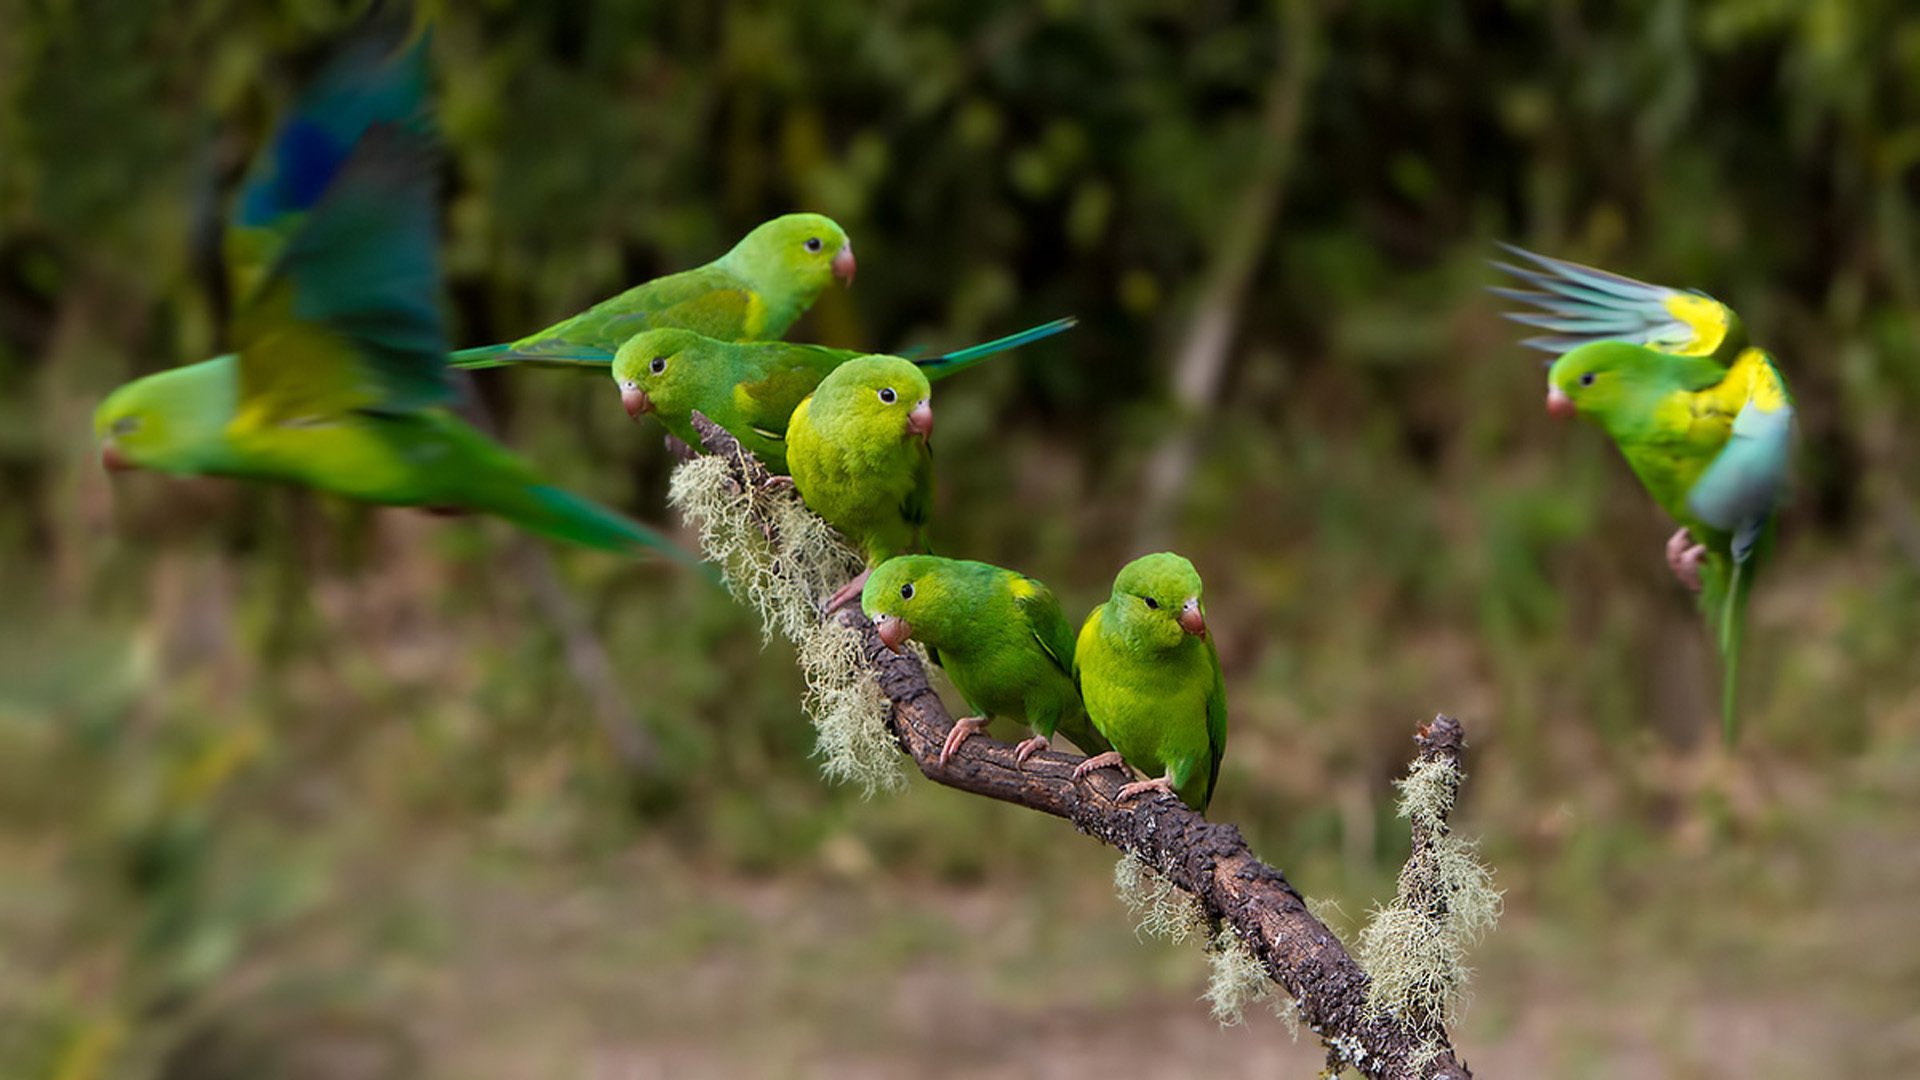 parakeet, Budgie, Parrot, Bird, Tropical,  49 Wallpaper